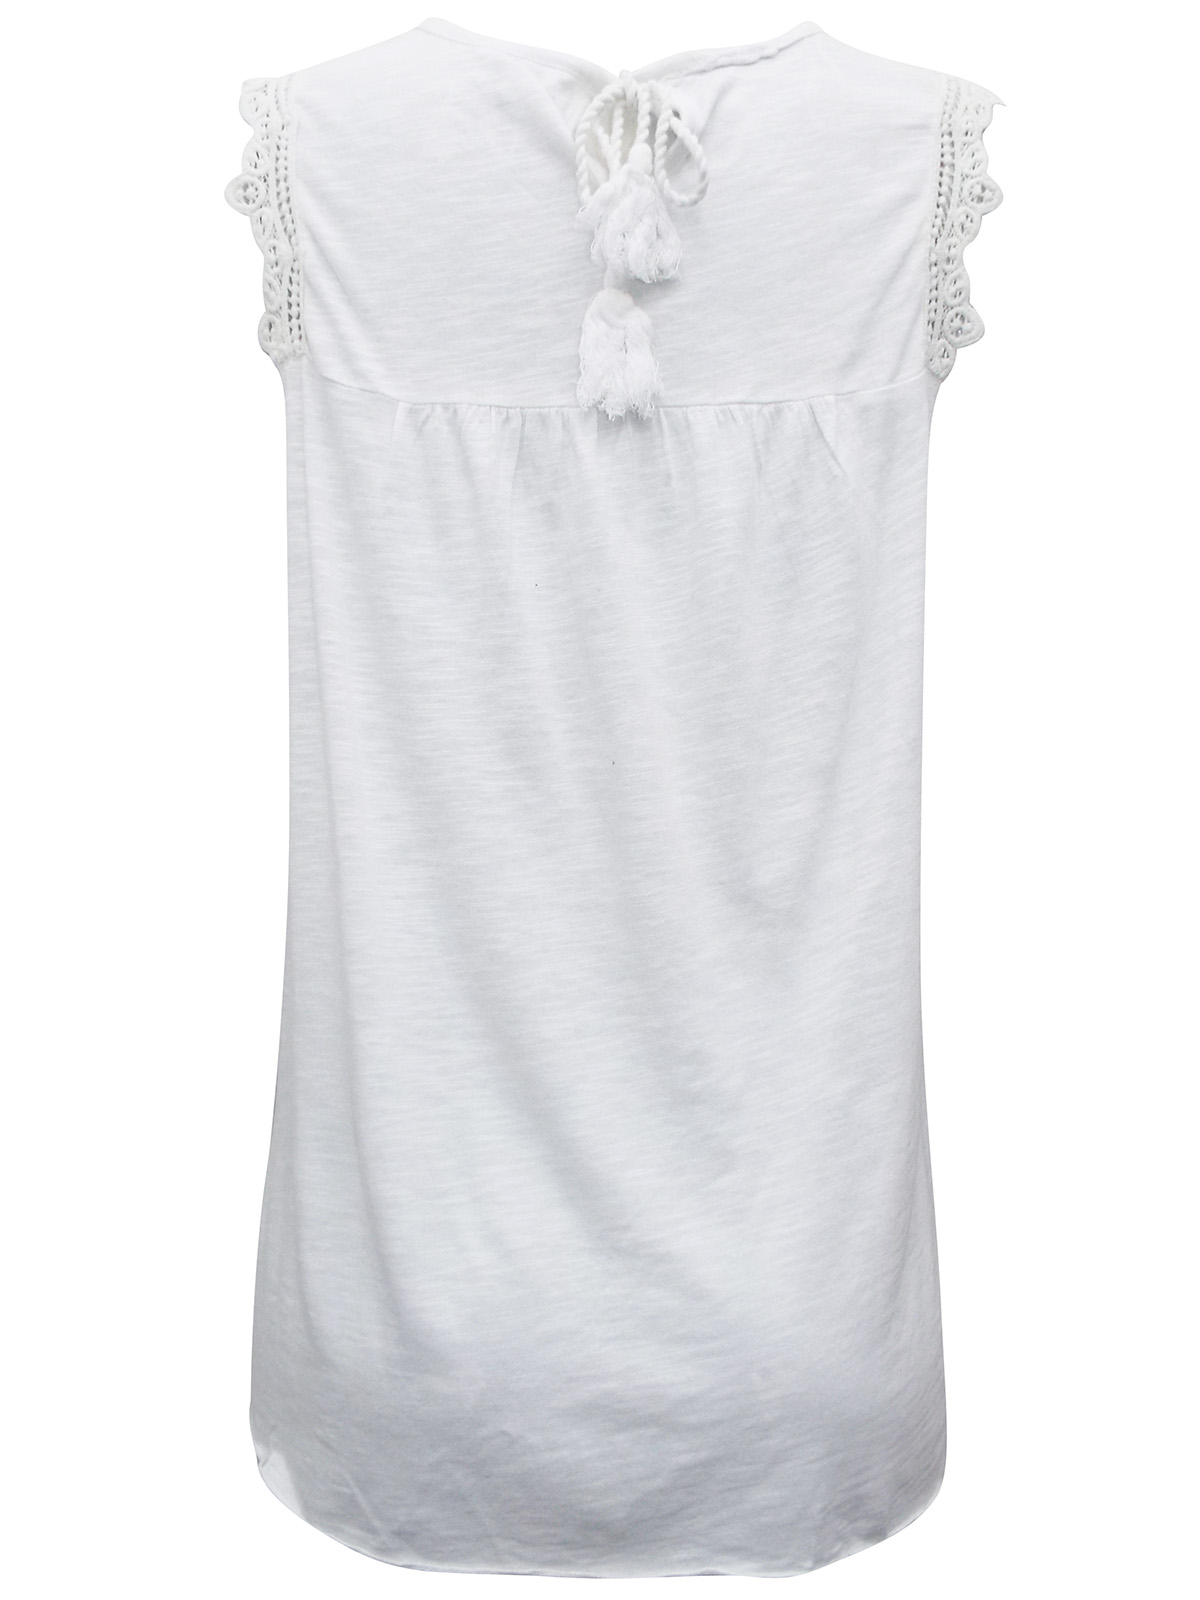 Zamba - - Zamba WHITE Sleeveless Embroidered Top - Size 10 to 14